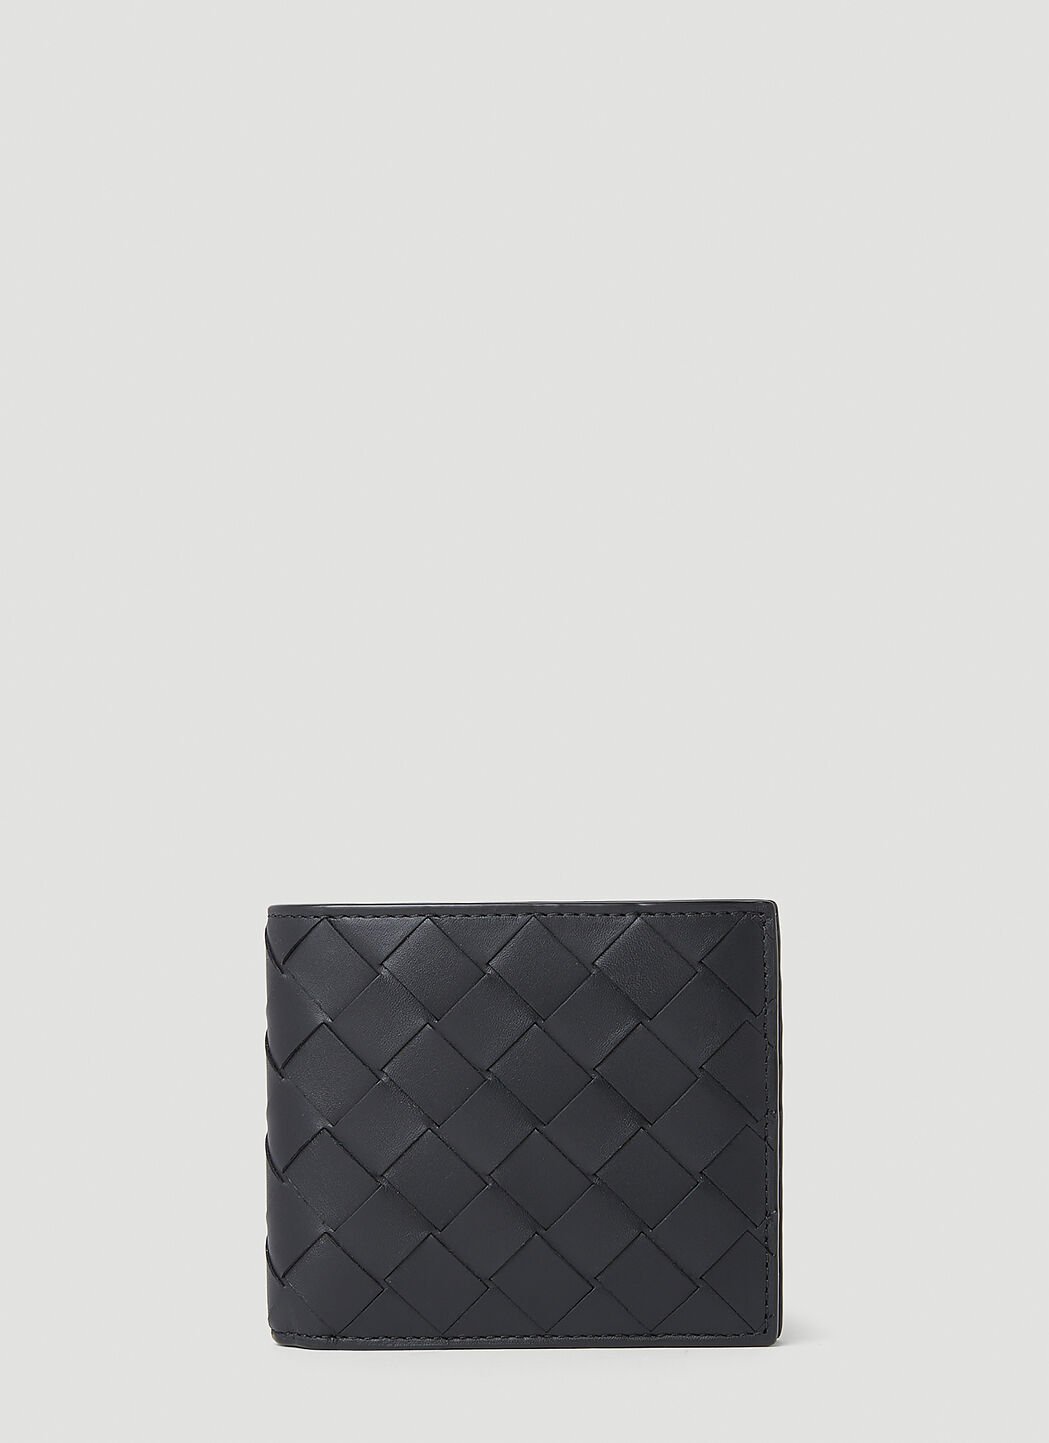 Acne Studios Intreccio Bi-Fold Wallet 粉色 acn0156032